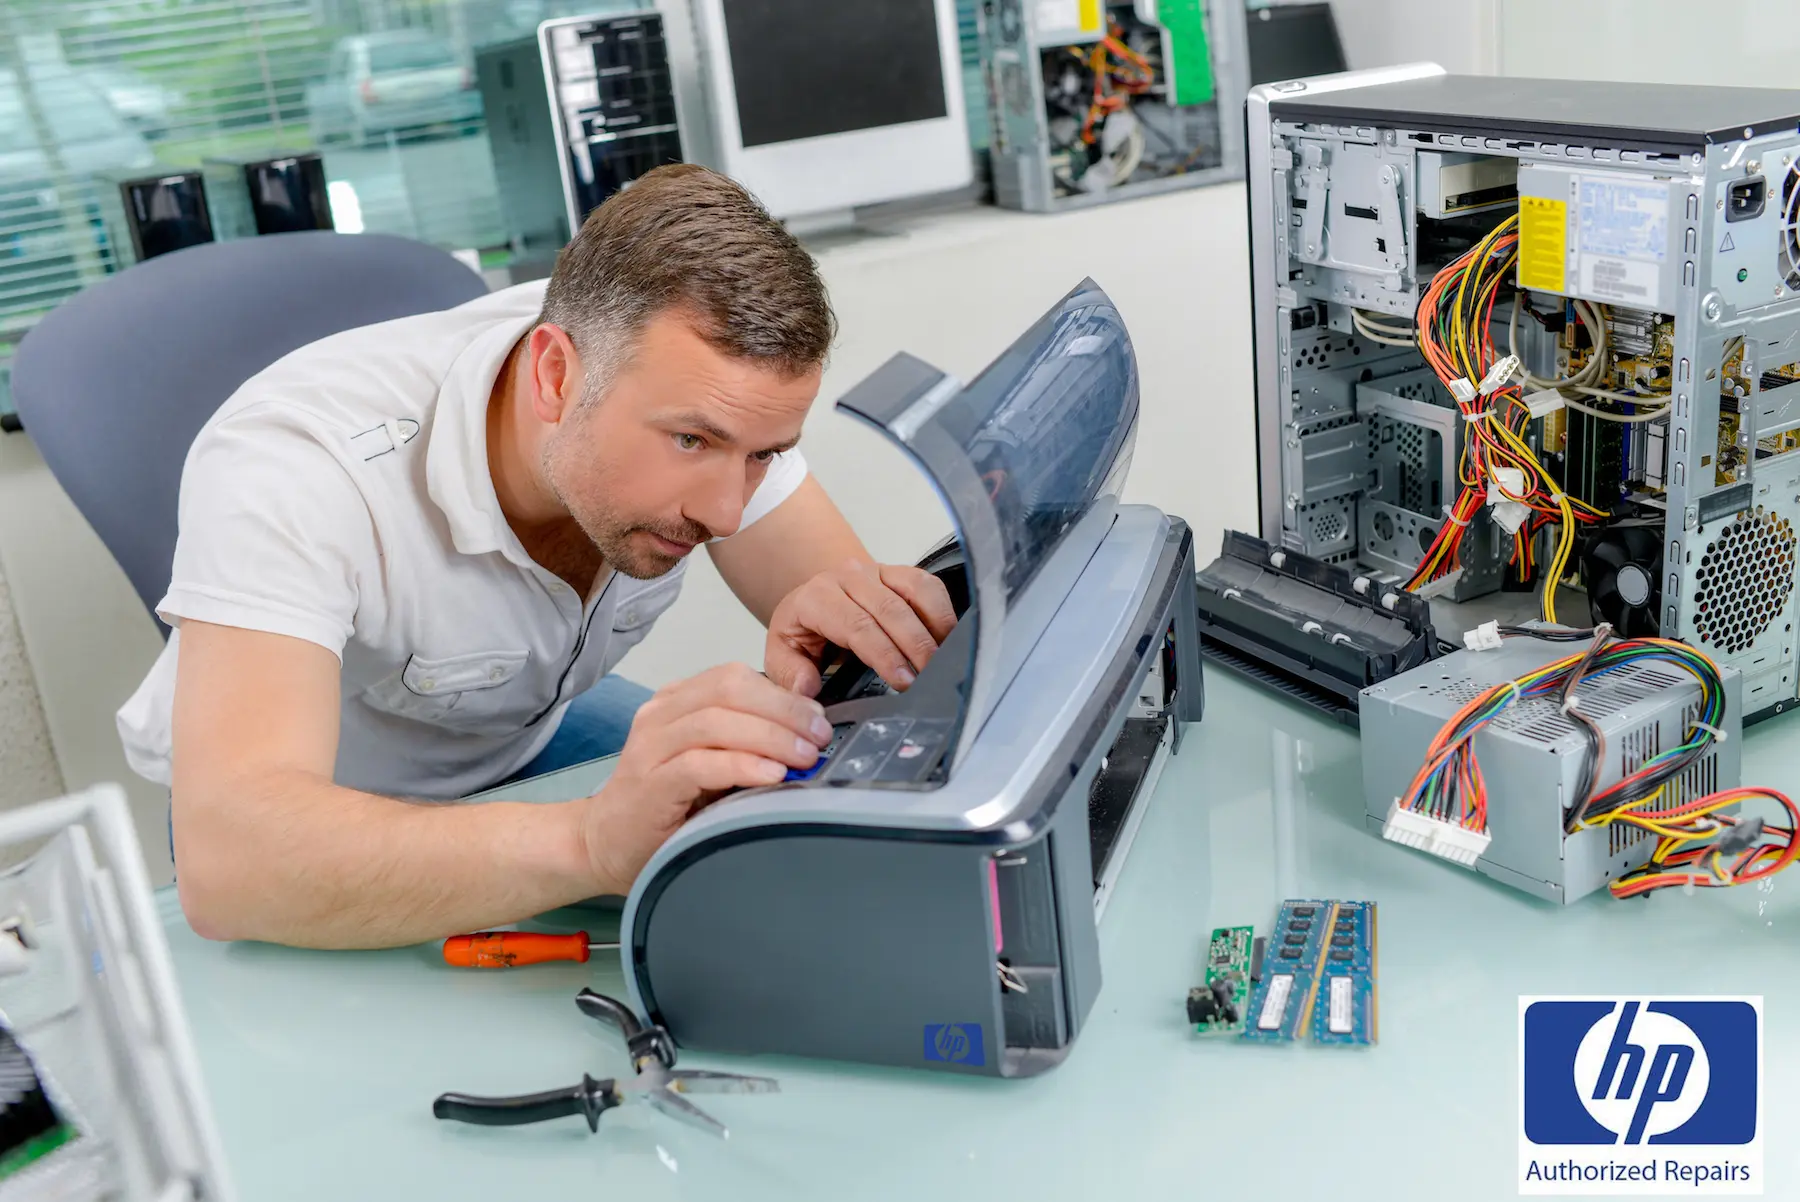 hewlett packard printer service repair certified - Does Geek Squad troubleshoot printers